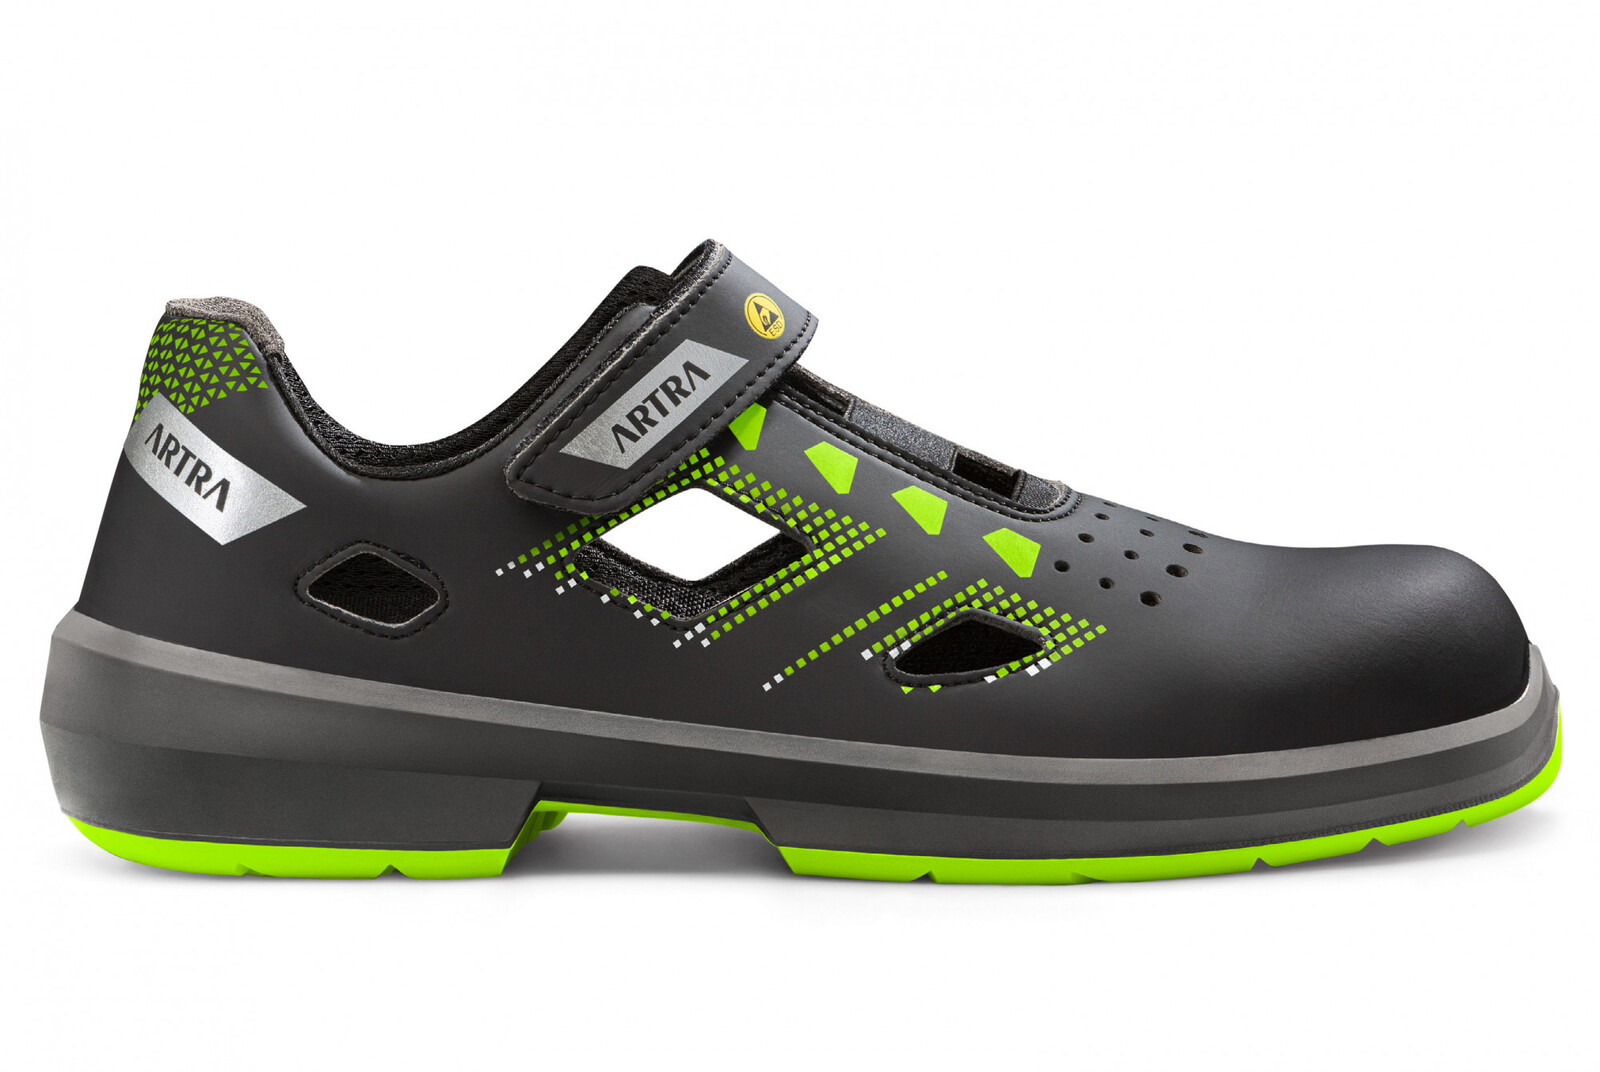 Bezpečnostné sandále Artra Arzo 805 678080 S1P SRC ESD MF - veľkosť: 48, farba: čierna/zelená